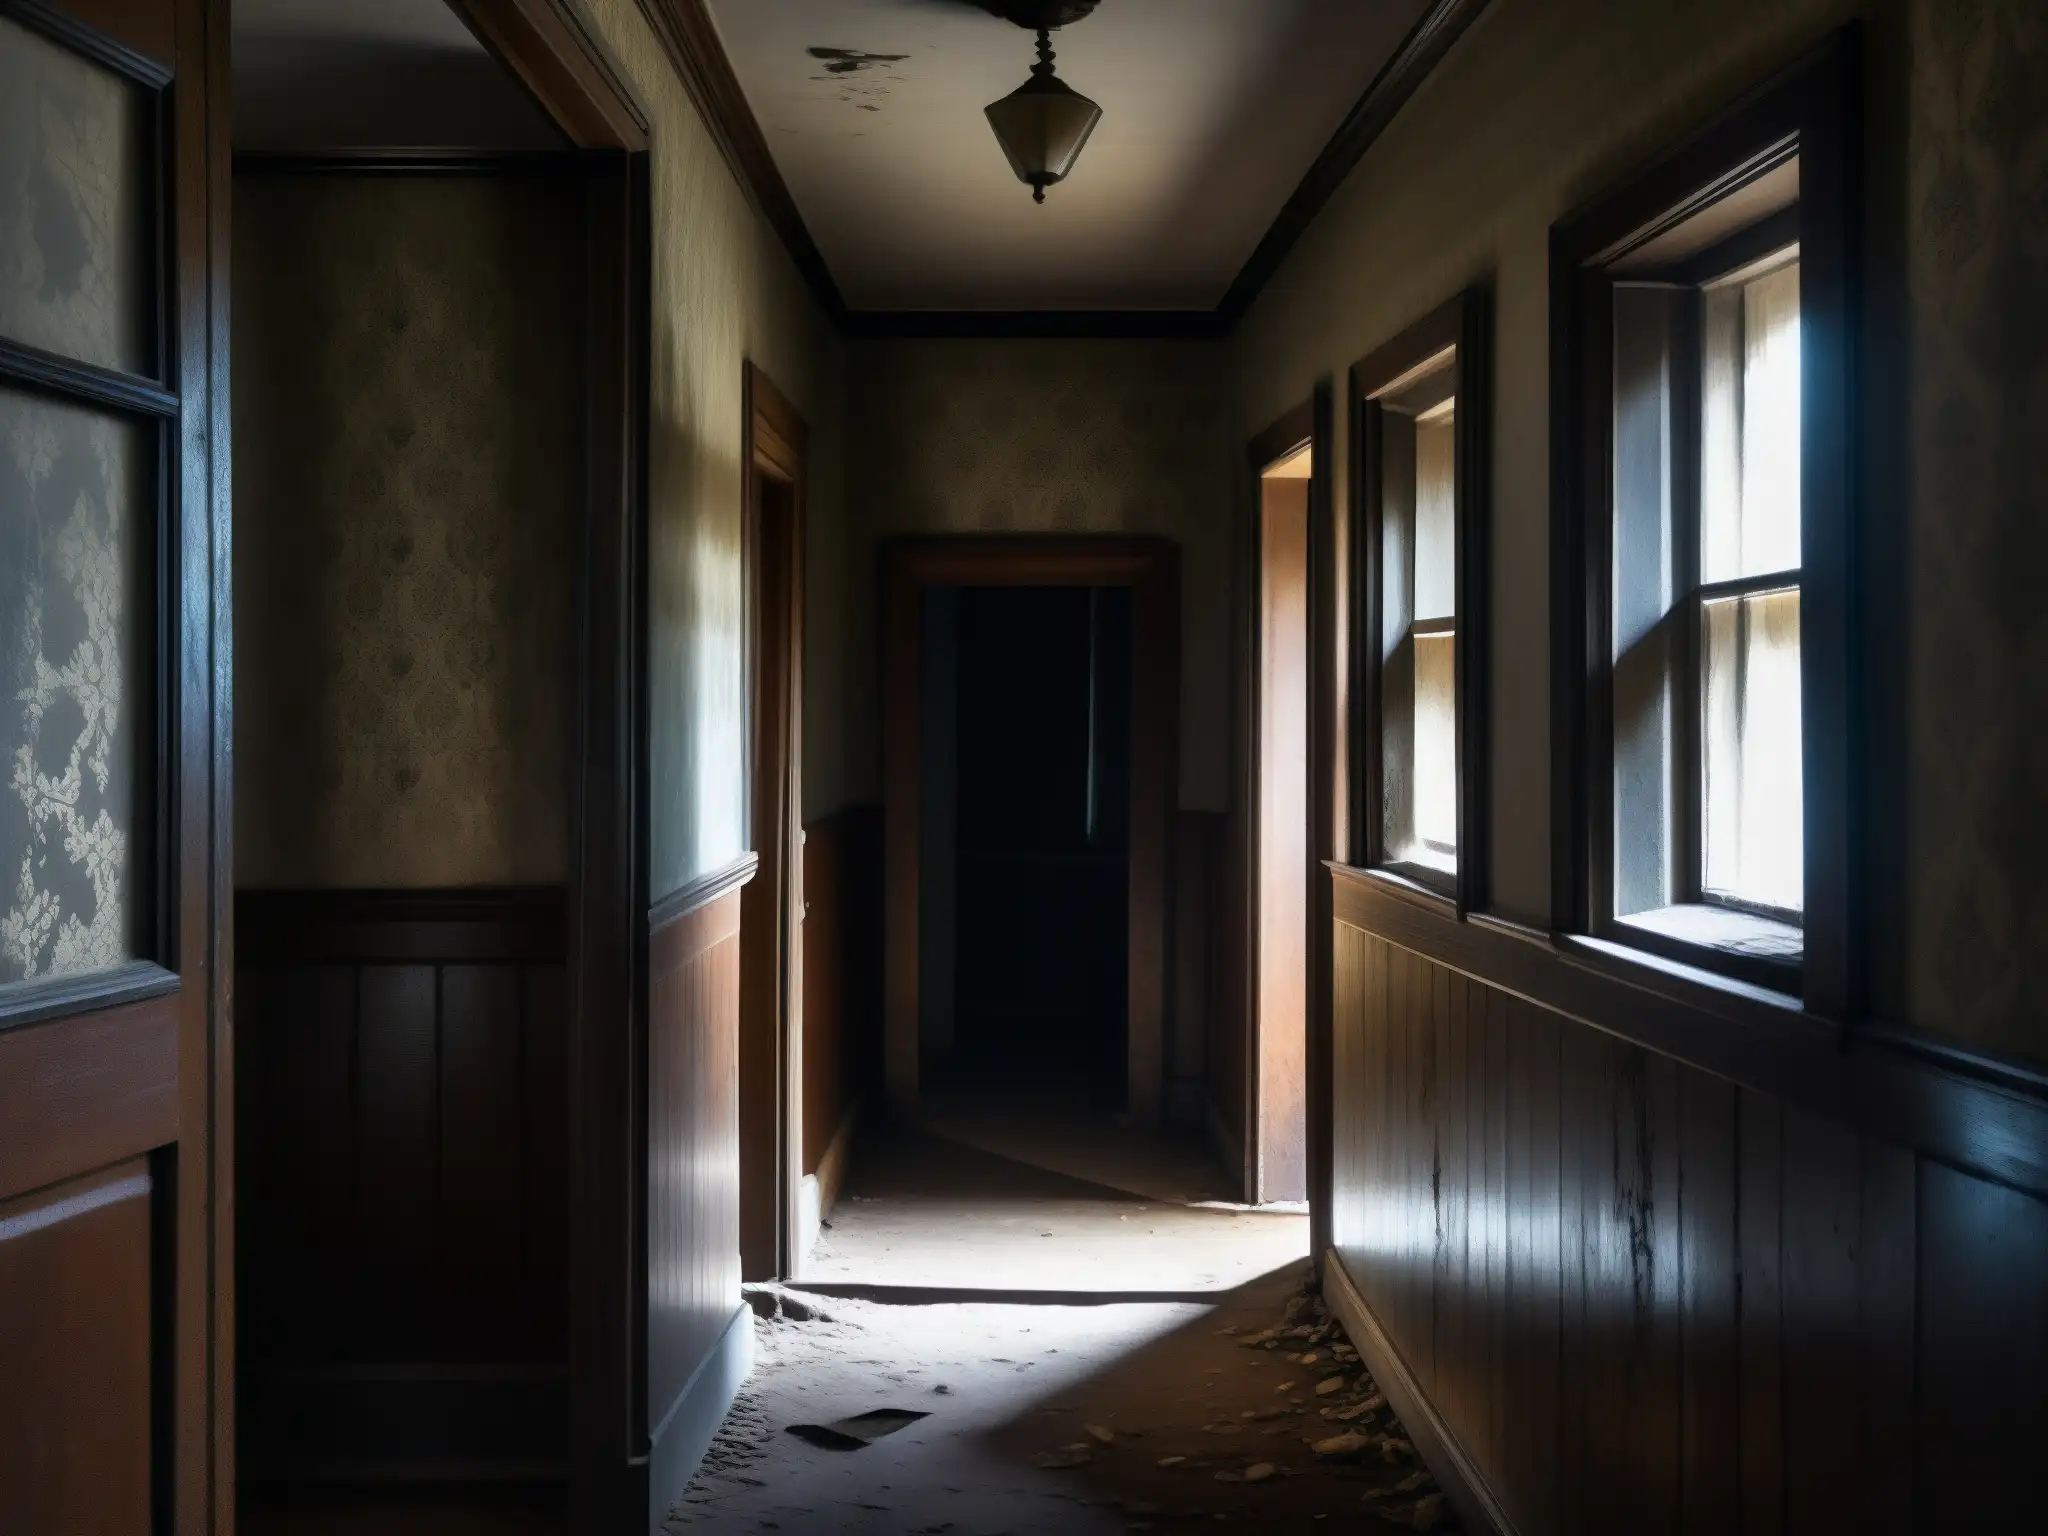 Siniestro pasillo de casa abandonada, con papel tapiz desgastado, susurros y sombras fantasmales